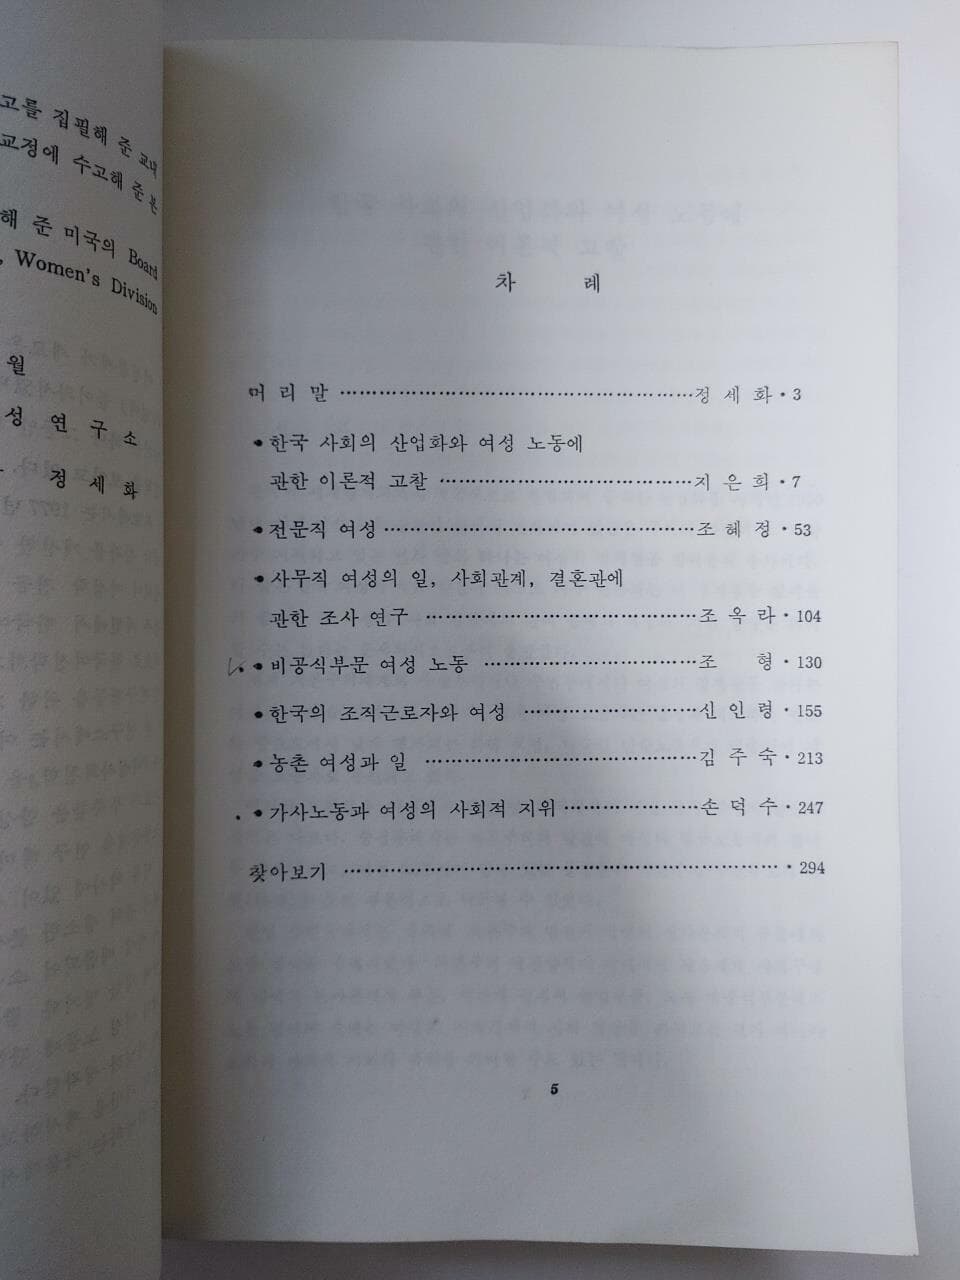 한국 여성과 일 / 이화여자대학교 한국여성연구소 편, 이화여자대학교 출판소, 1990